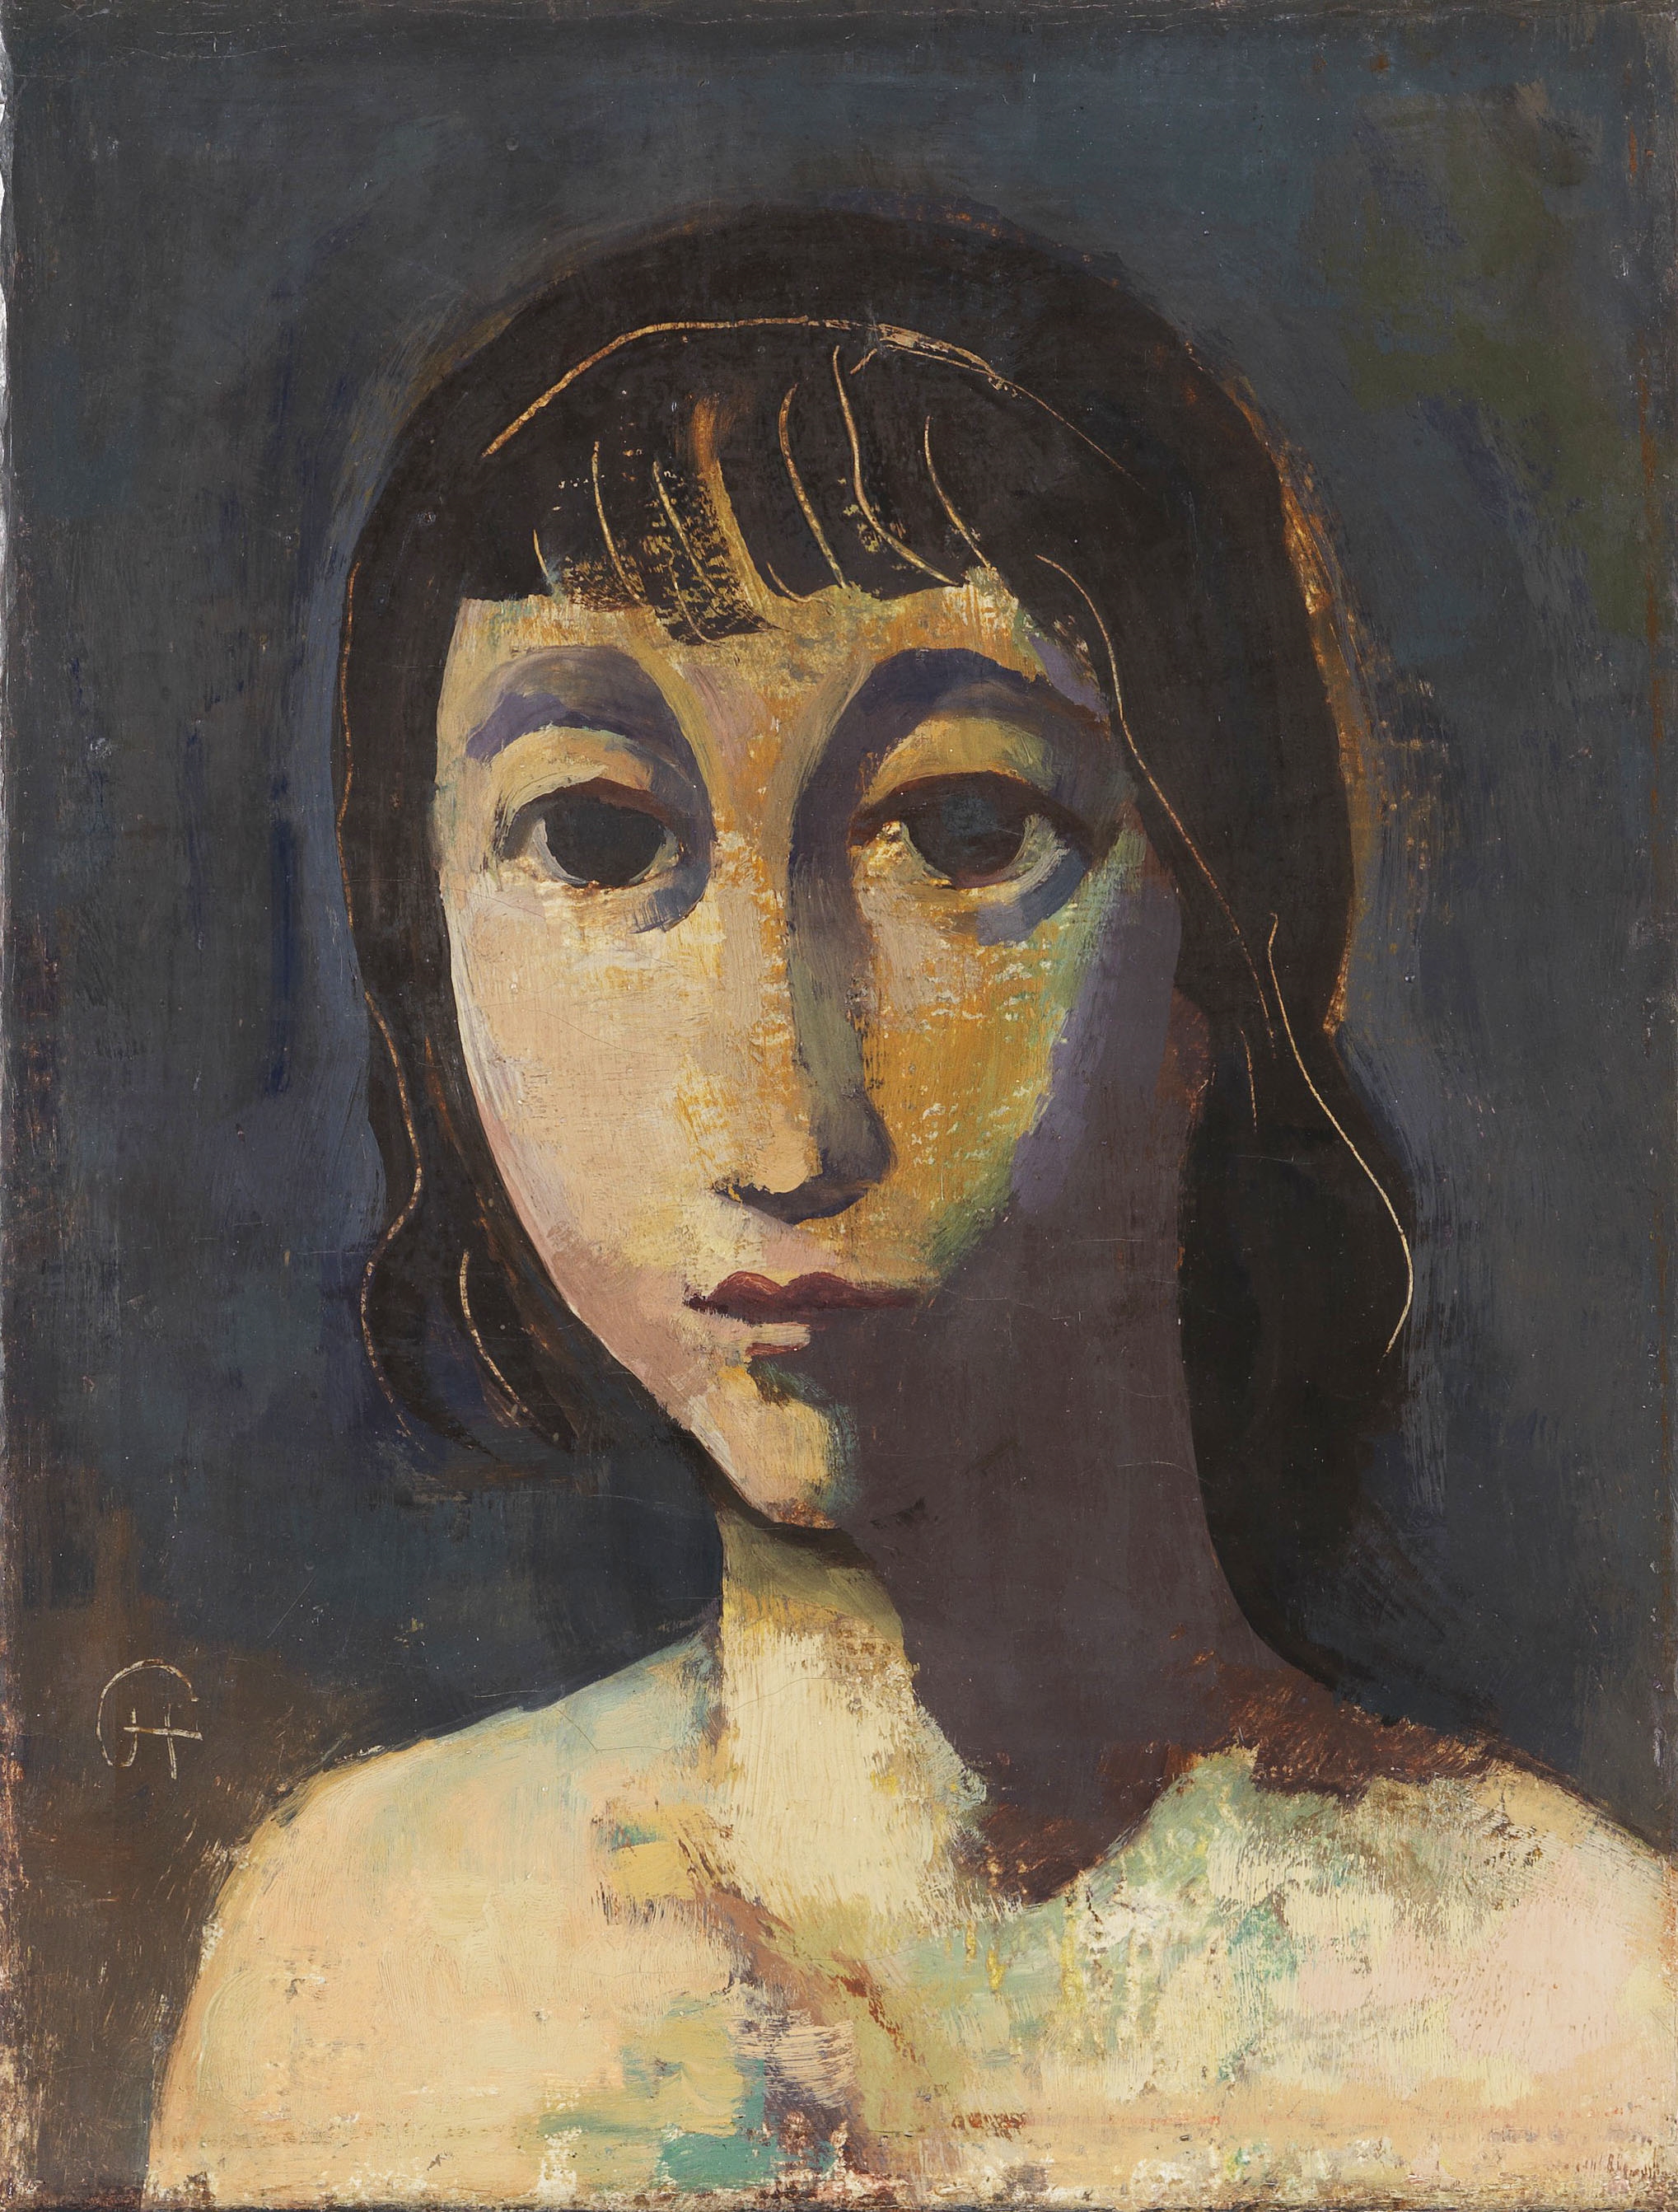 Mädchenkopf mit dunklem Haar by Karl Hofer, 1938